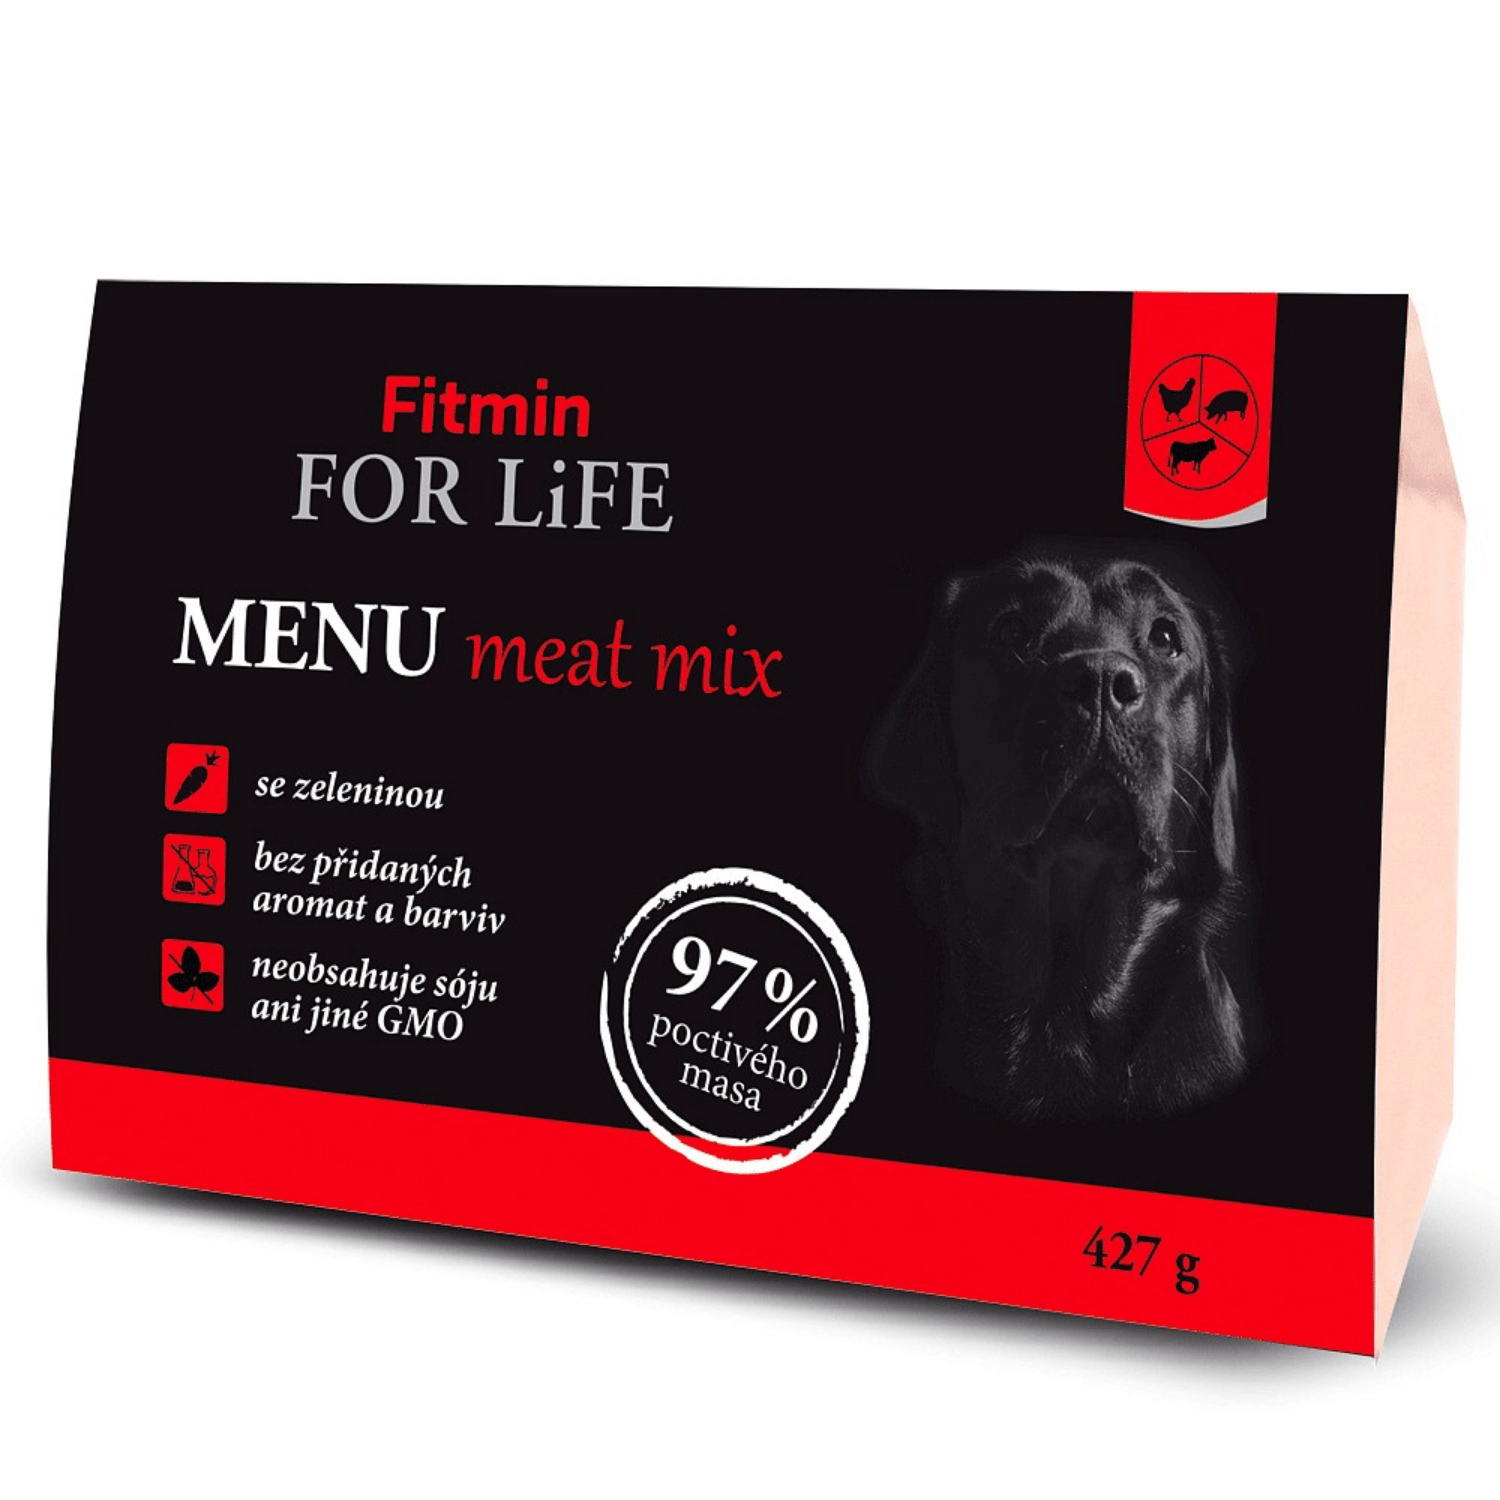 Fitmin FFL Dog Menu Meat Mix 427g